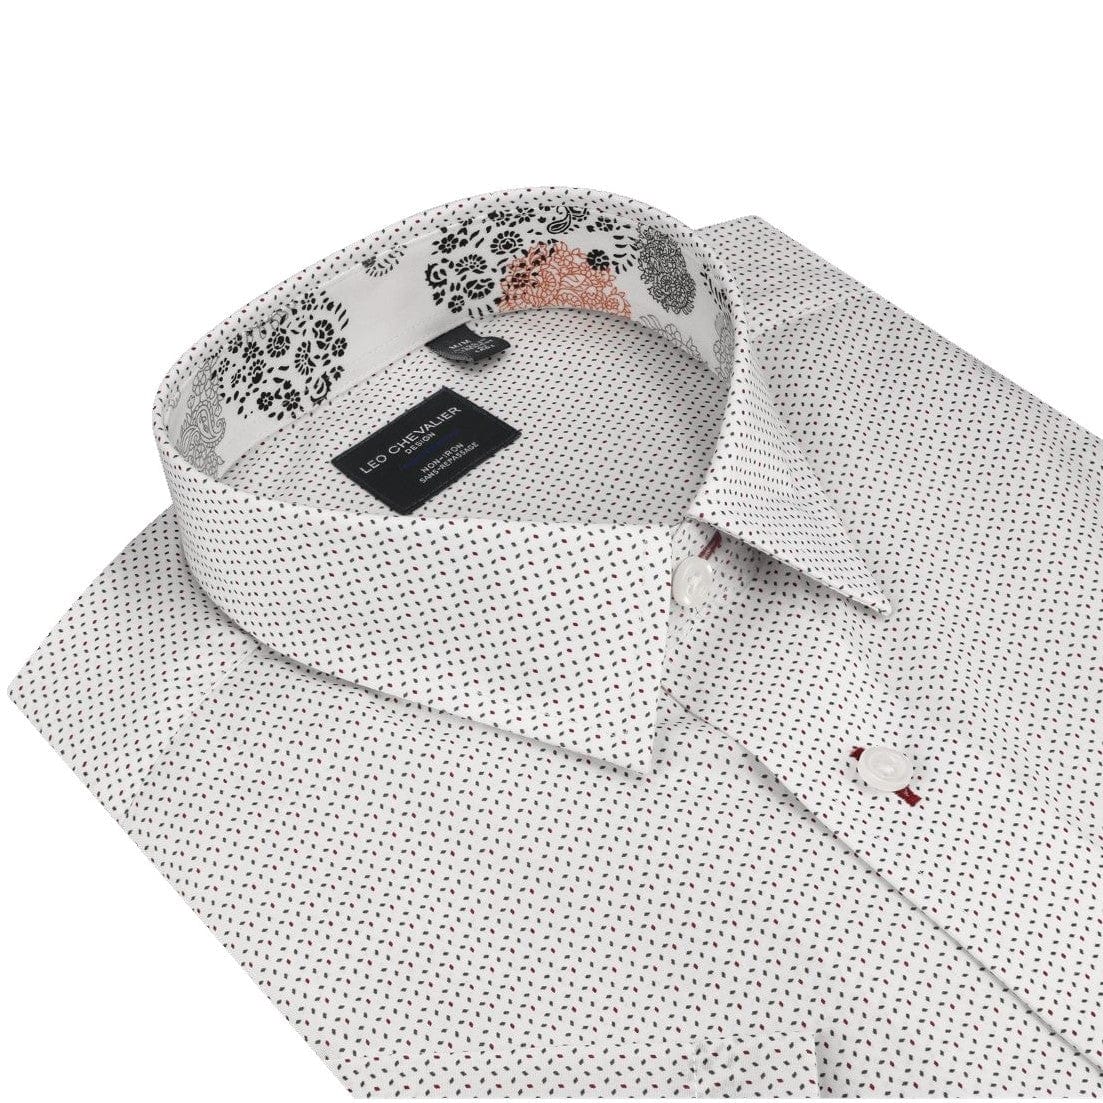 Leo Chevalier Design Red & Grey Print on White Leo Chevalier Hidden Down Collar Cotton Short Sleeve Shirts